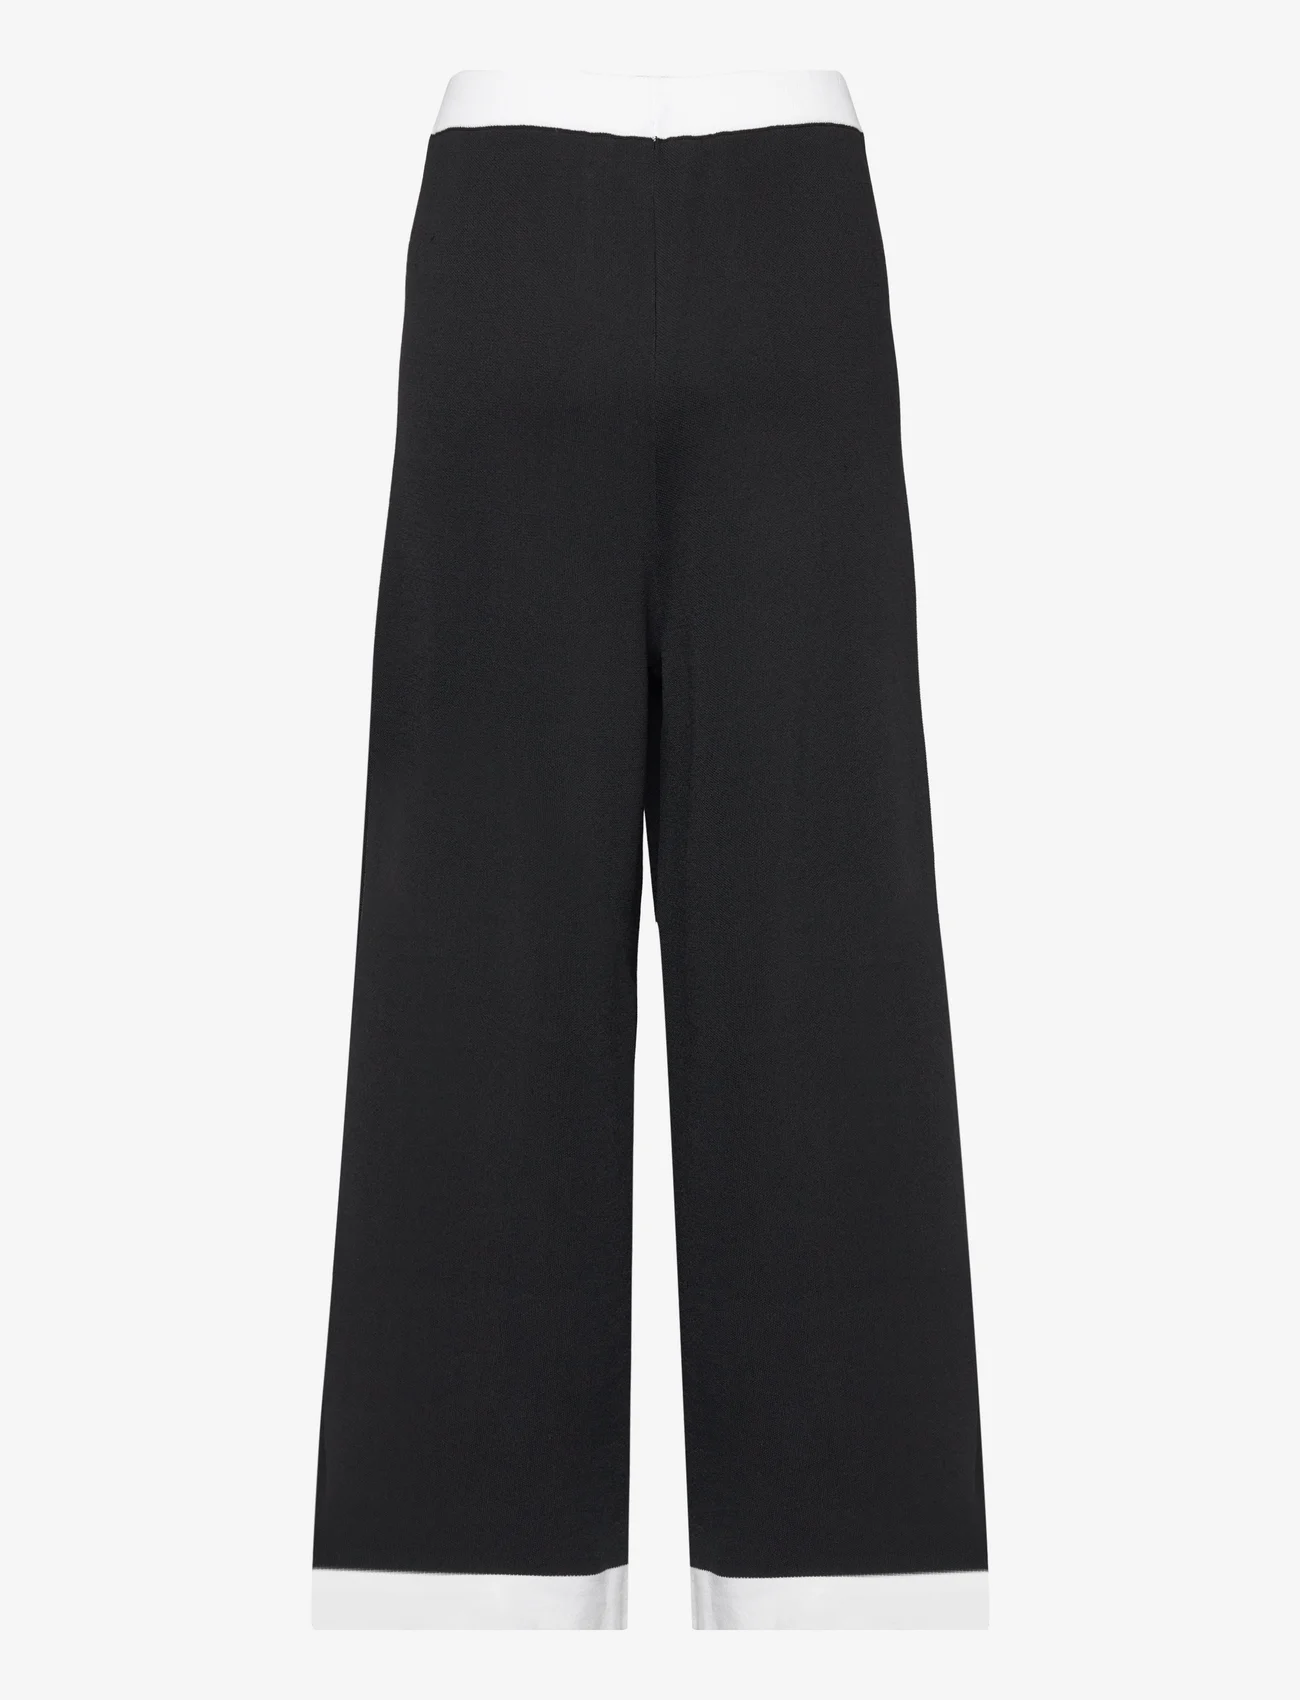 Karl Lagerfeld - classic knit pants - leveälahkeiset housut - black/white - 1